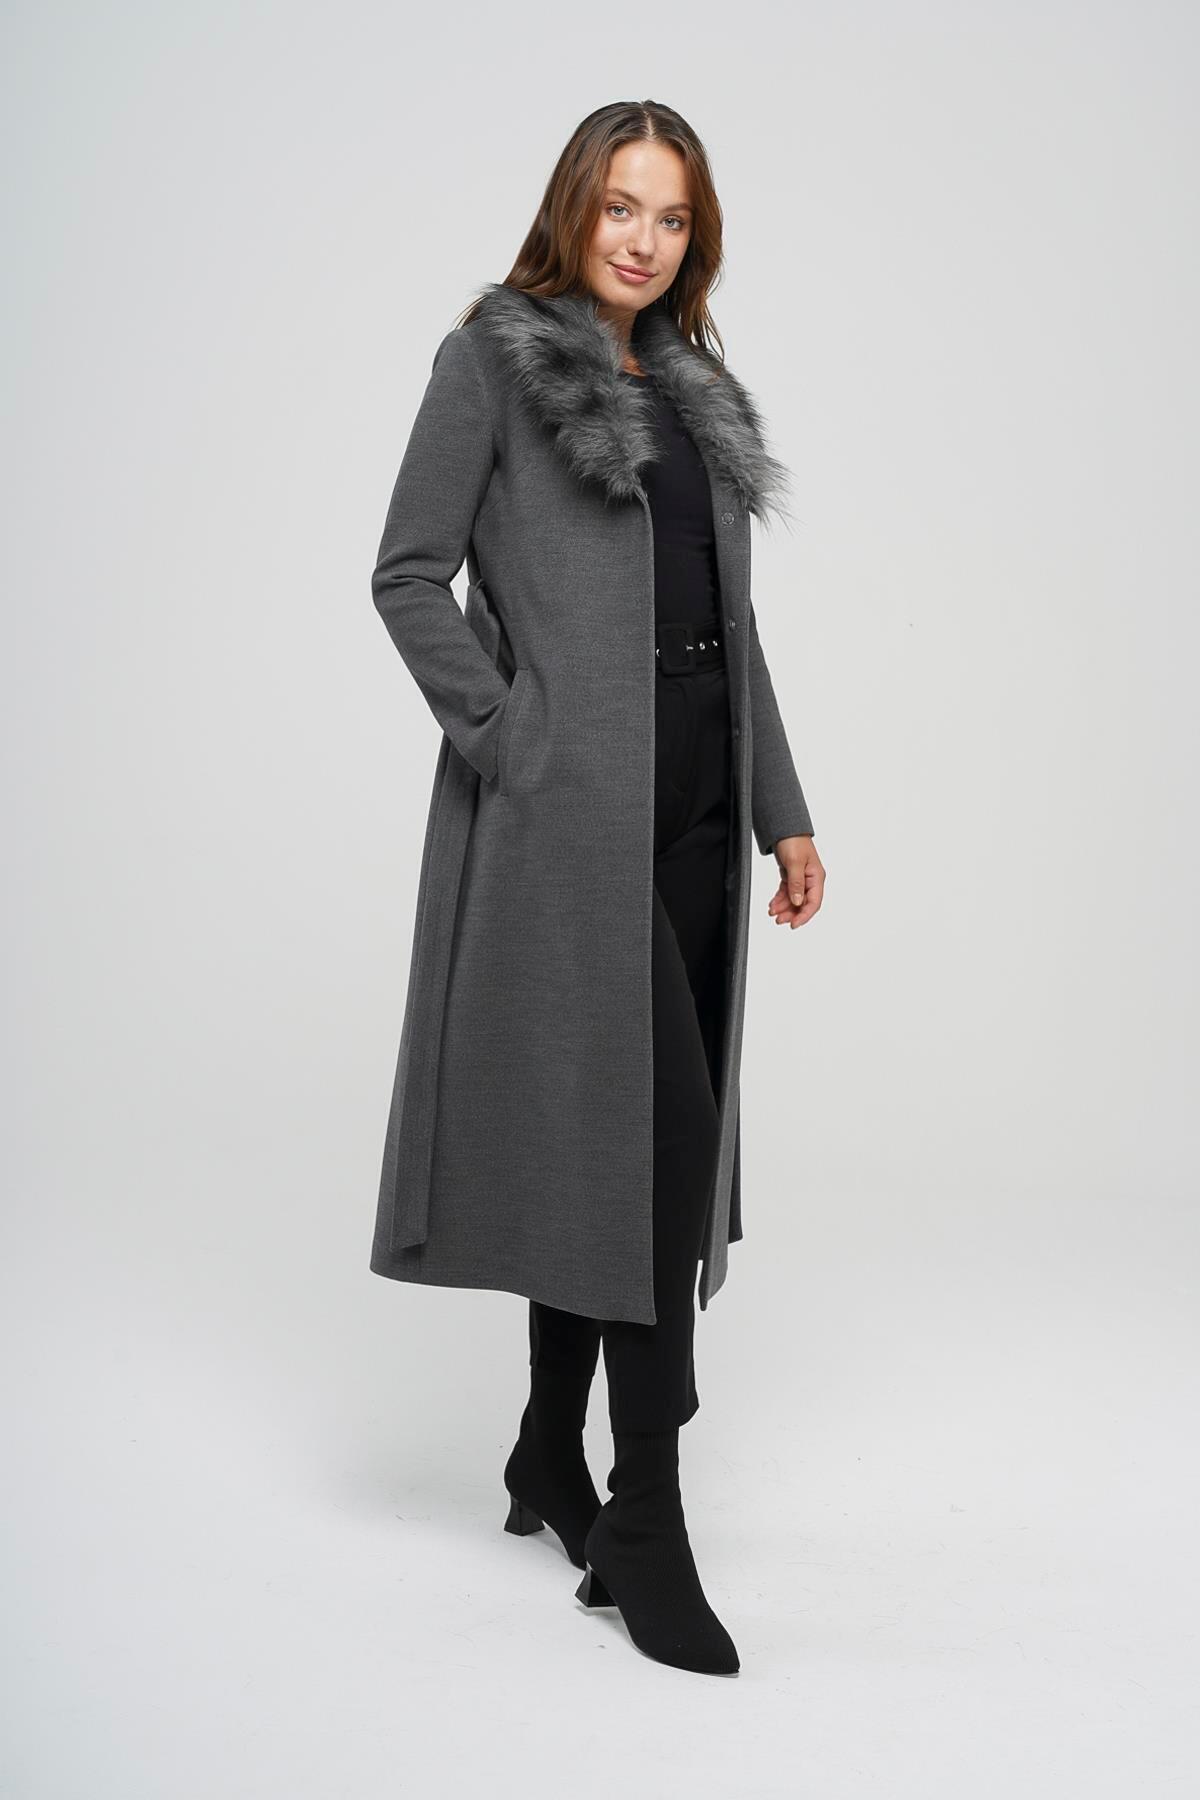 женское хлопковое пальто с большим меховым воротником свободного покроя средней длины m289 Пальто средней длины с меховым воротником на талии Темно-серый 3397 Concept.